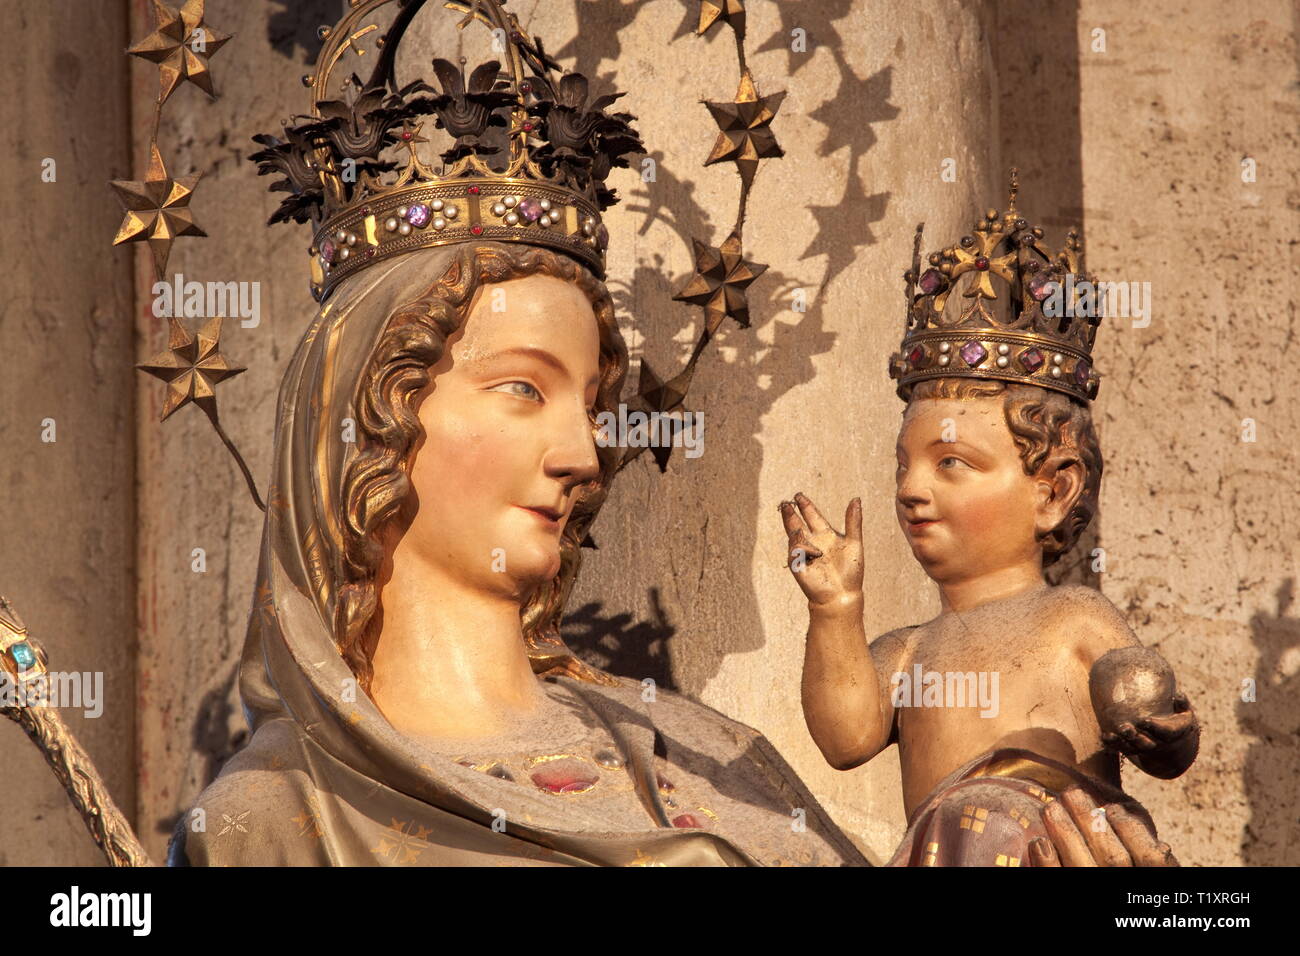 Belle arti, l'arte religiosa, Madonna statua nella cattedrale di Colonia, artista del diritto d'autore non deve essere cancellata Foto Stock